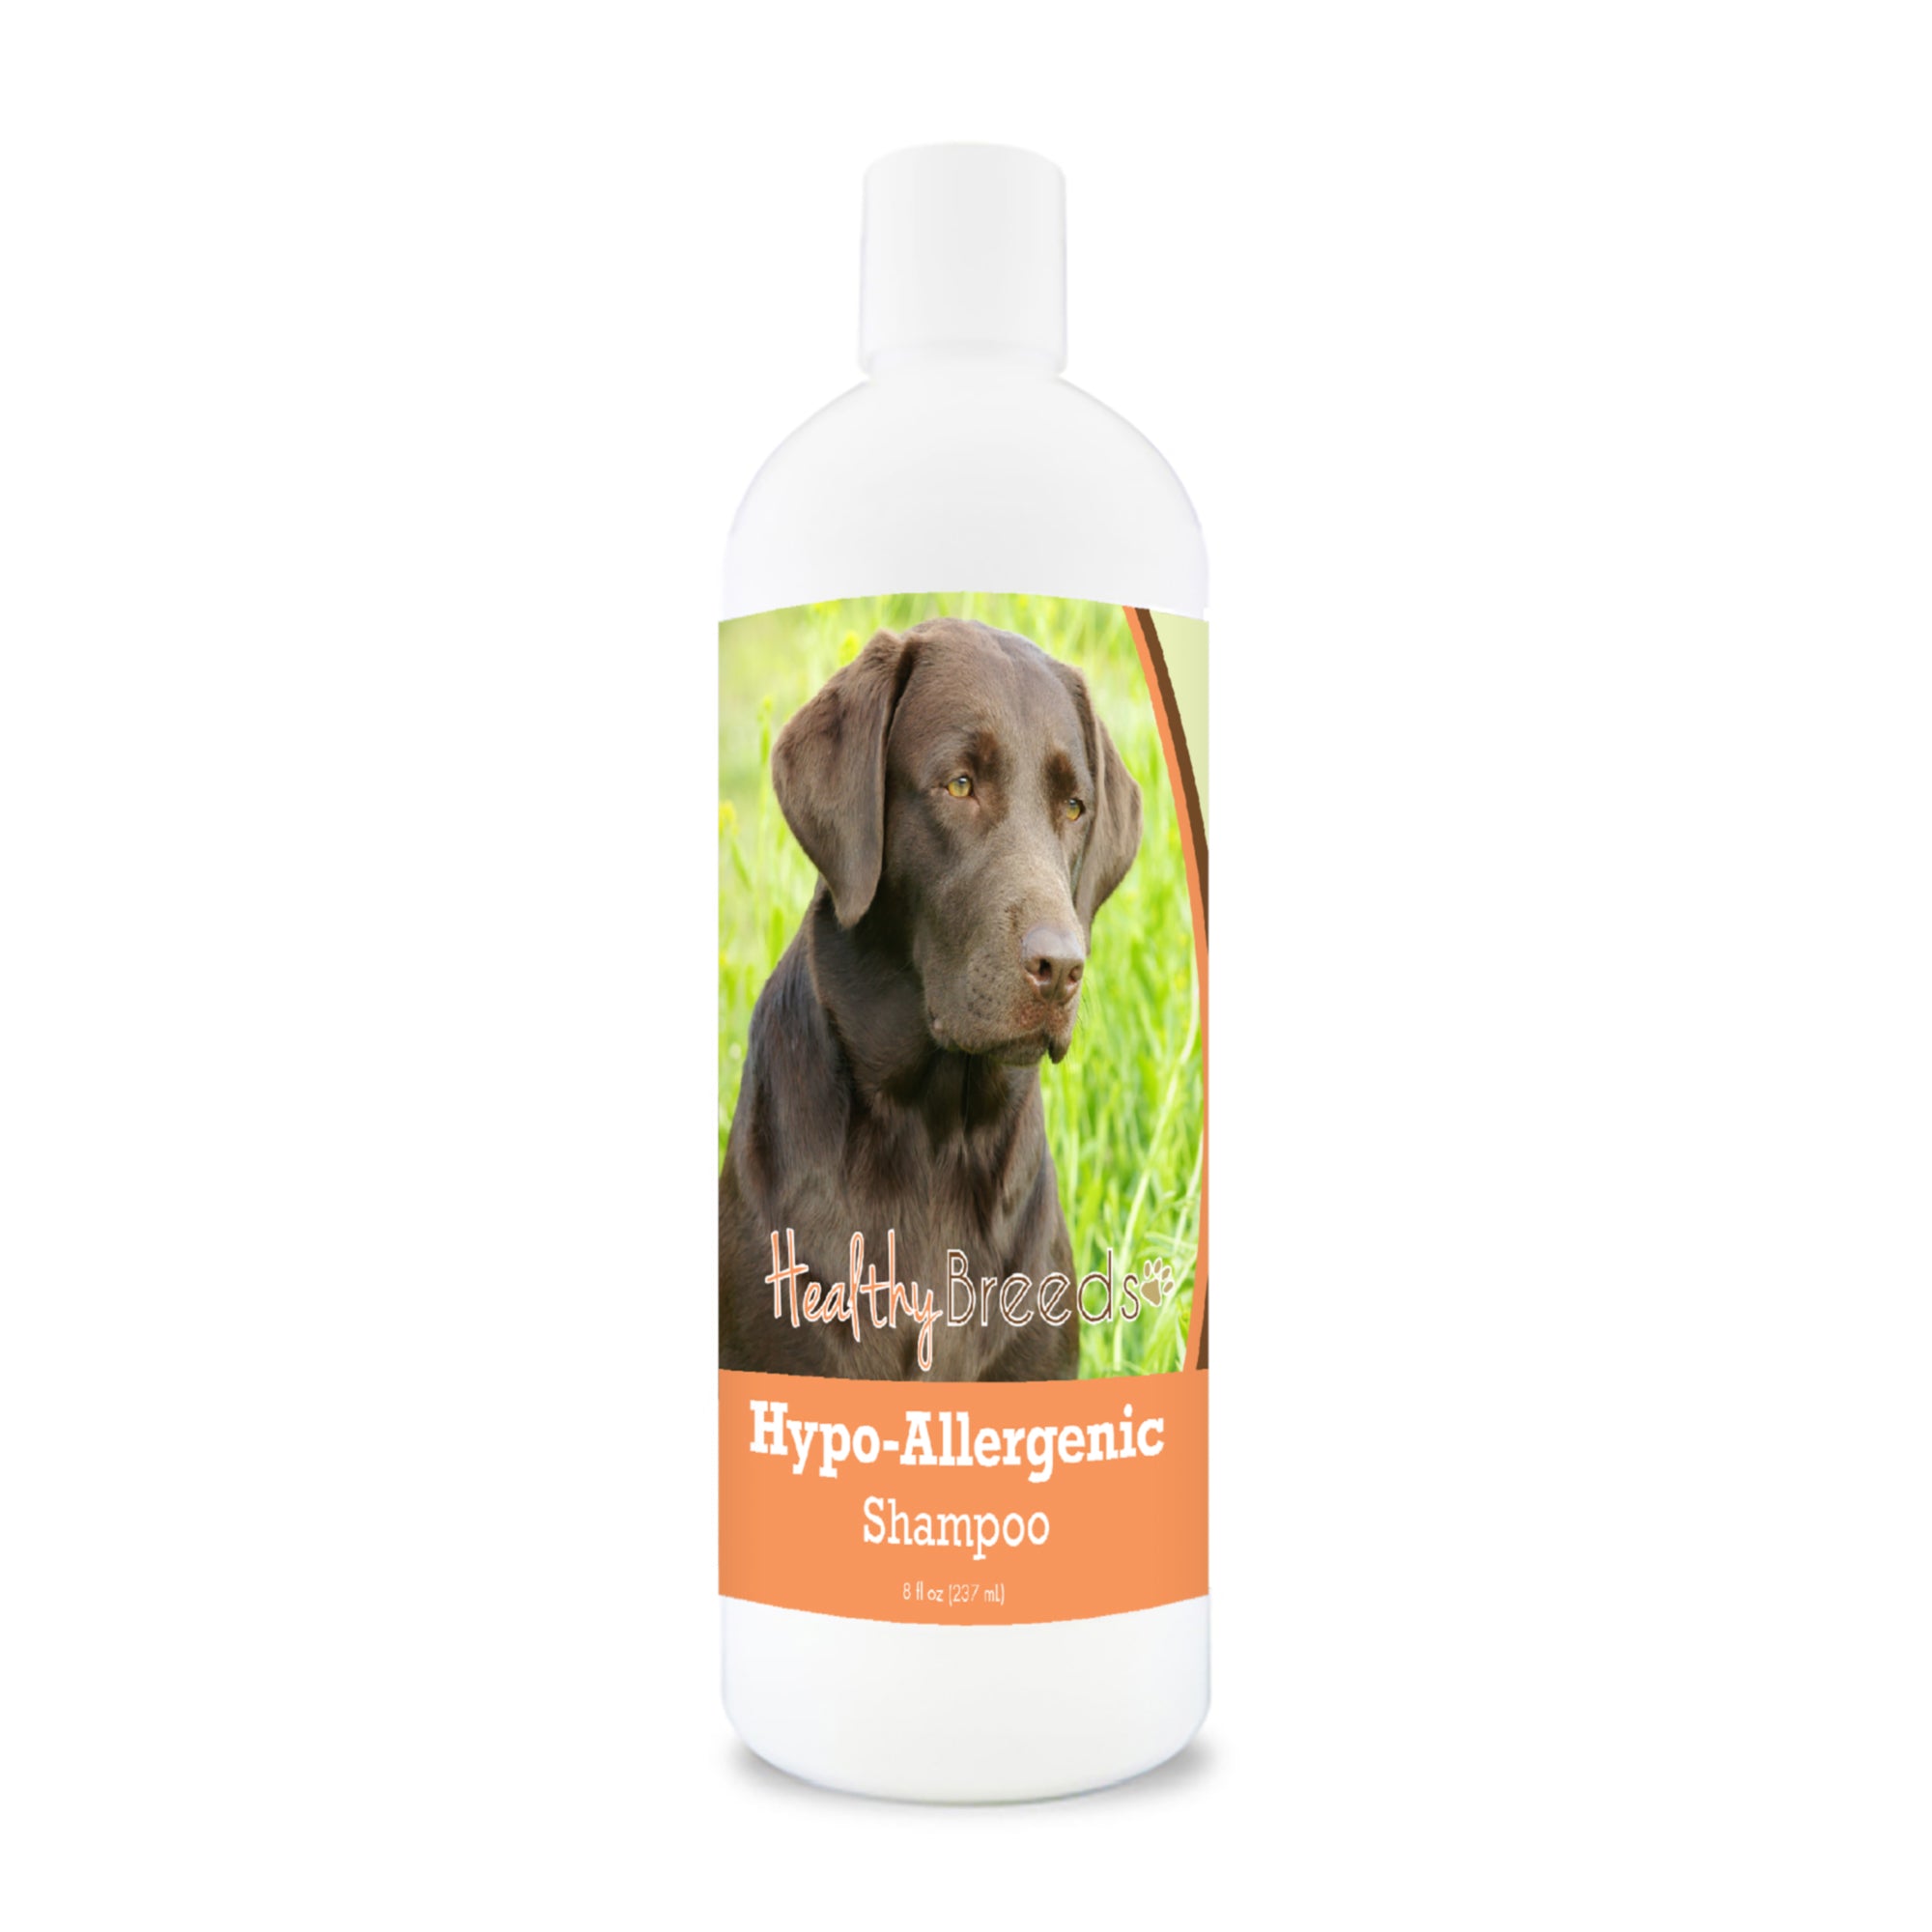 Labrador Retriever Hypo-Allergenic Shampoo 8 oz